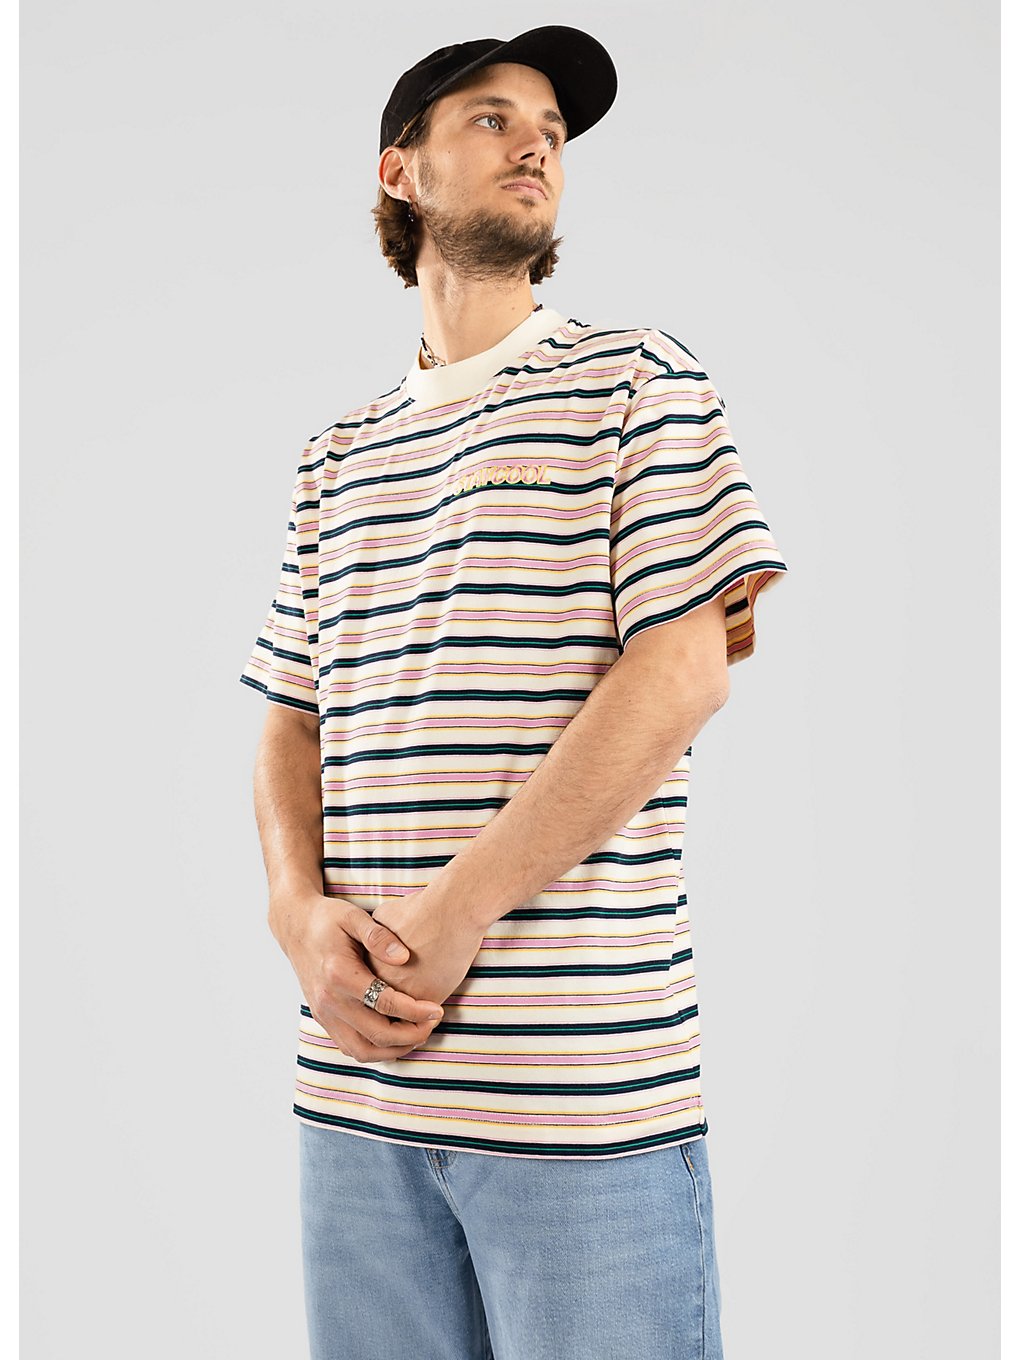 Staycoolnyc Bubblegum Striped T-Shirt multi kaufen